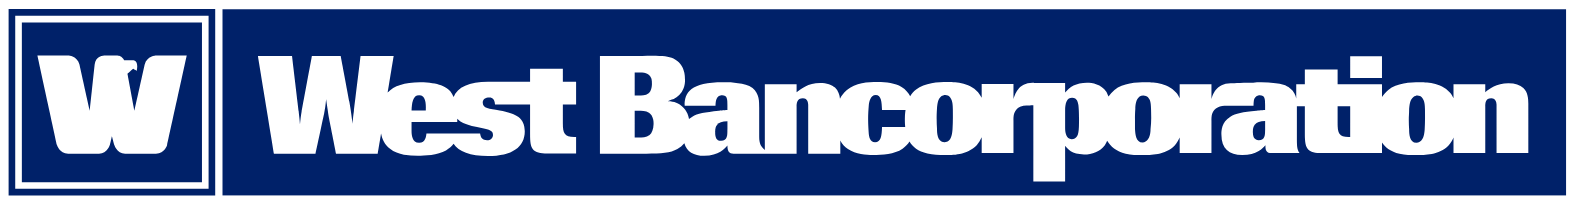 West Bancorporation logo large (transparent PNG)